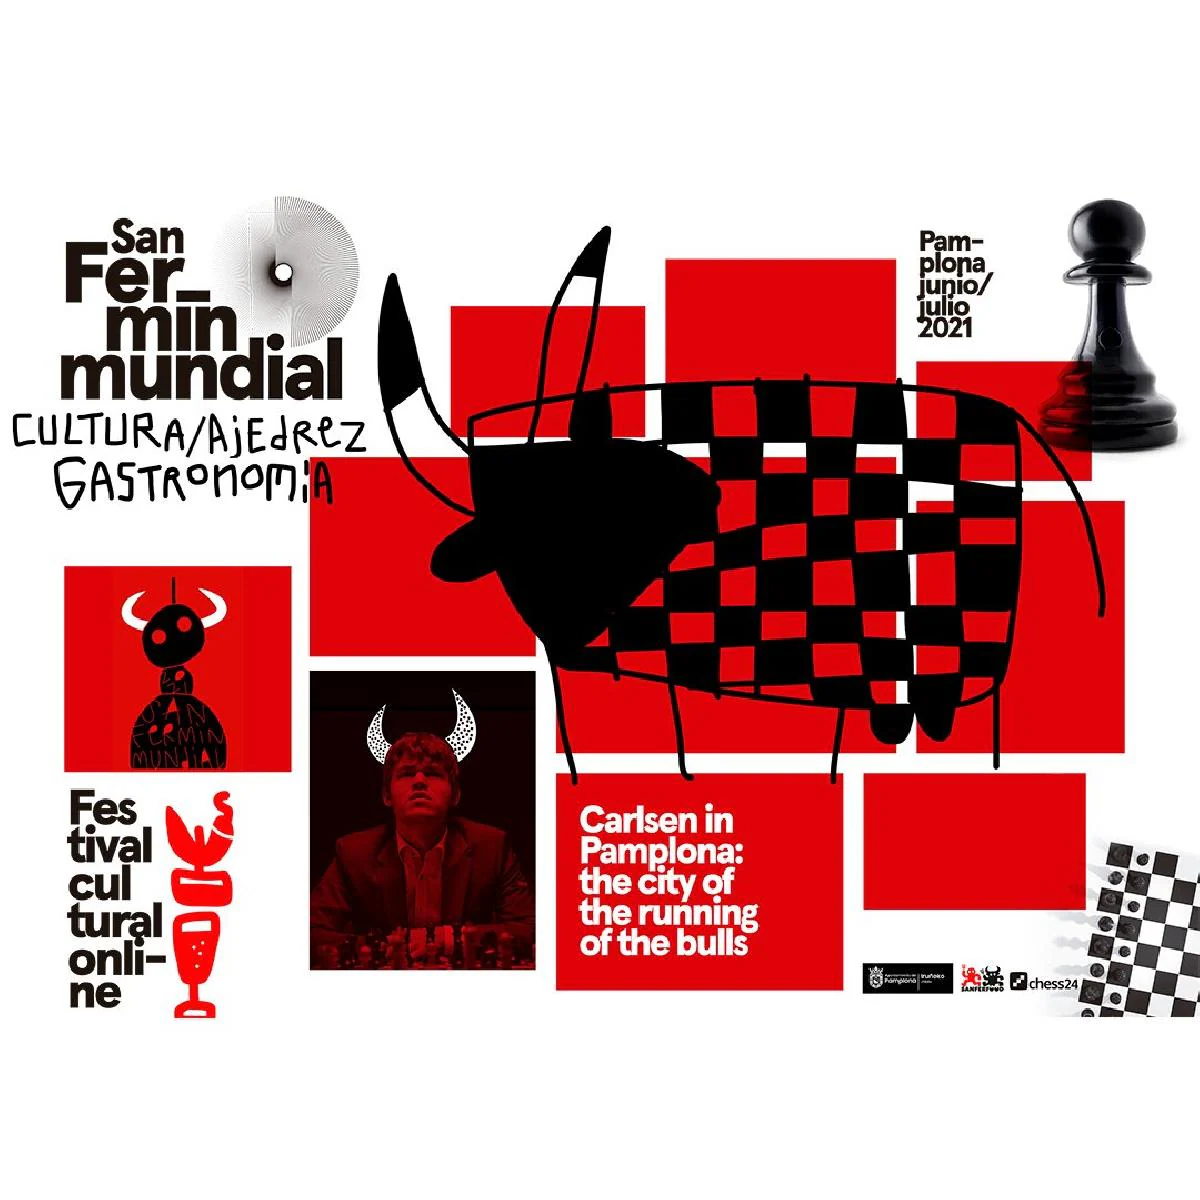 Los Sanfermines cambian los toros por el ajedrez, con Carlsen como cabeza de cartel